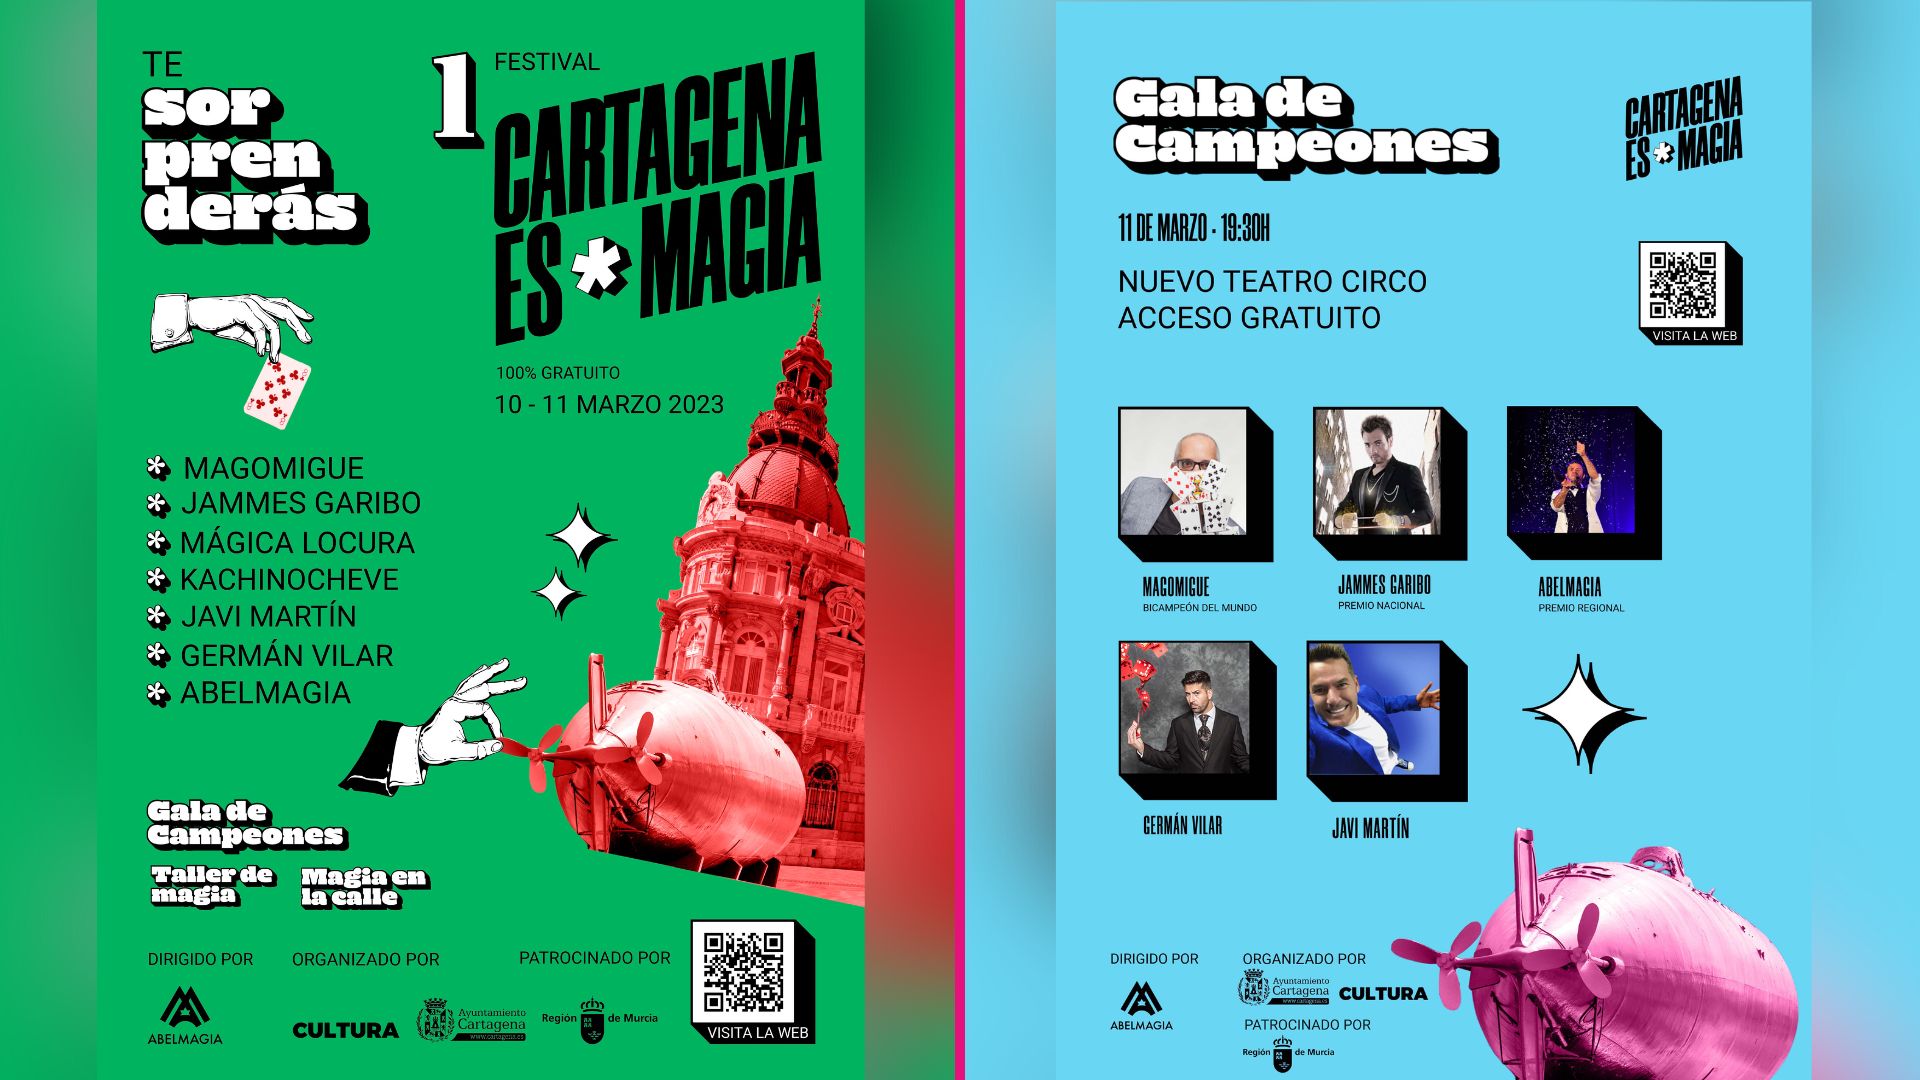 CARTAGENA | ‘Cartagena es Magia’ convierte a la ciudad en la capital del ilusionismo